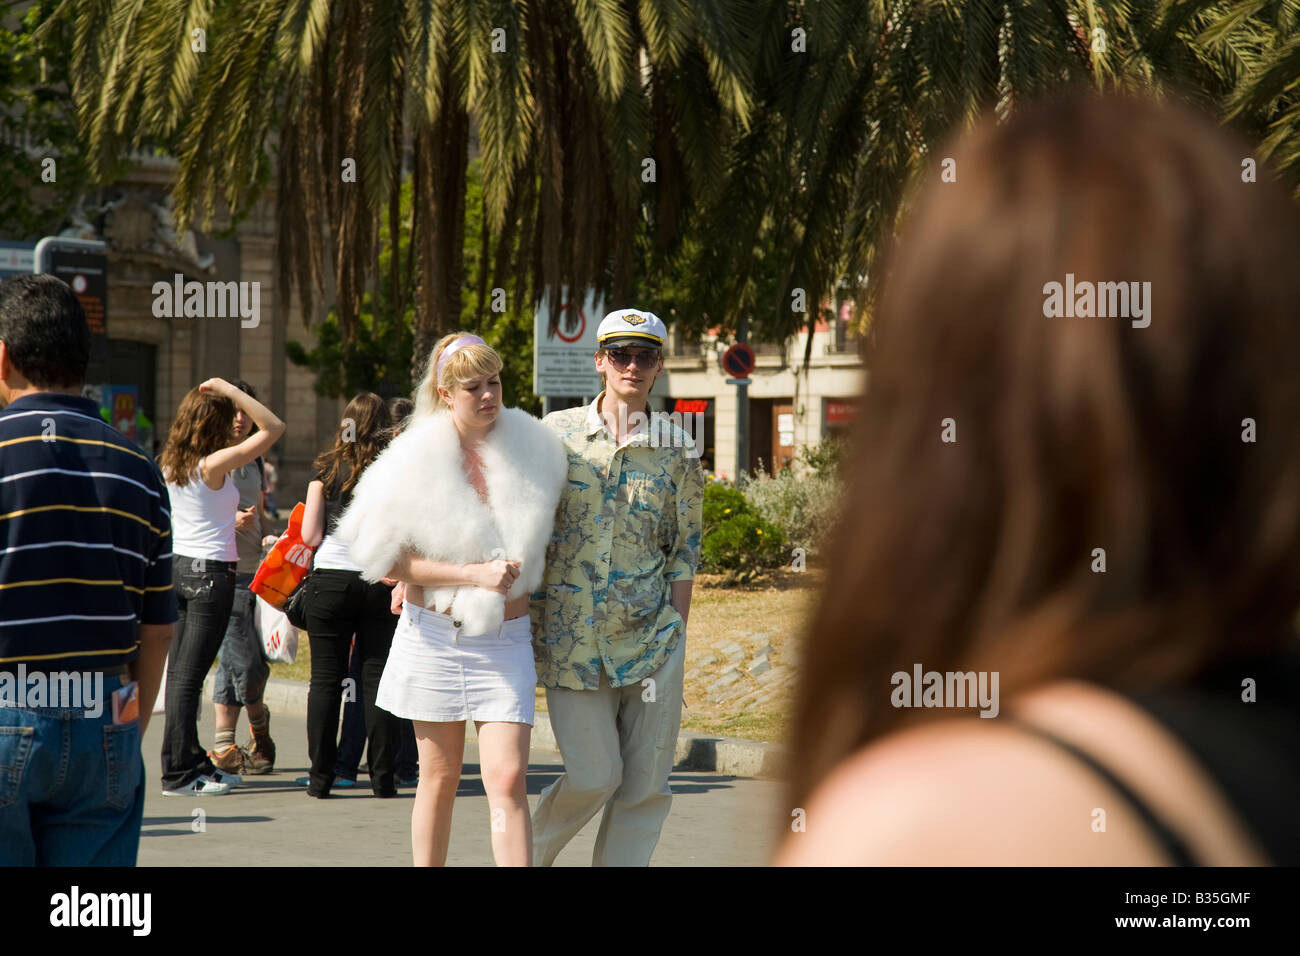 Spanien Barcelona Young erwachsenes paar Spaziergang auf der Straße am Ende der Las Ramblas Frau tragen weiße flauschige Fell Stola Stockfoto